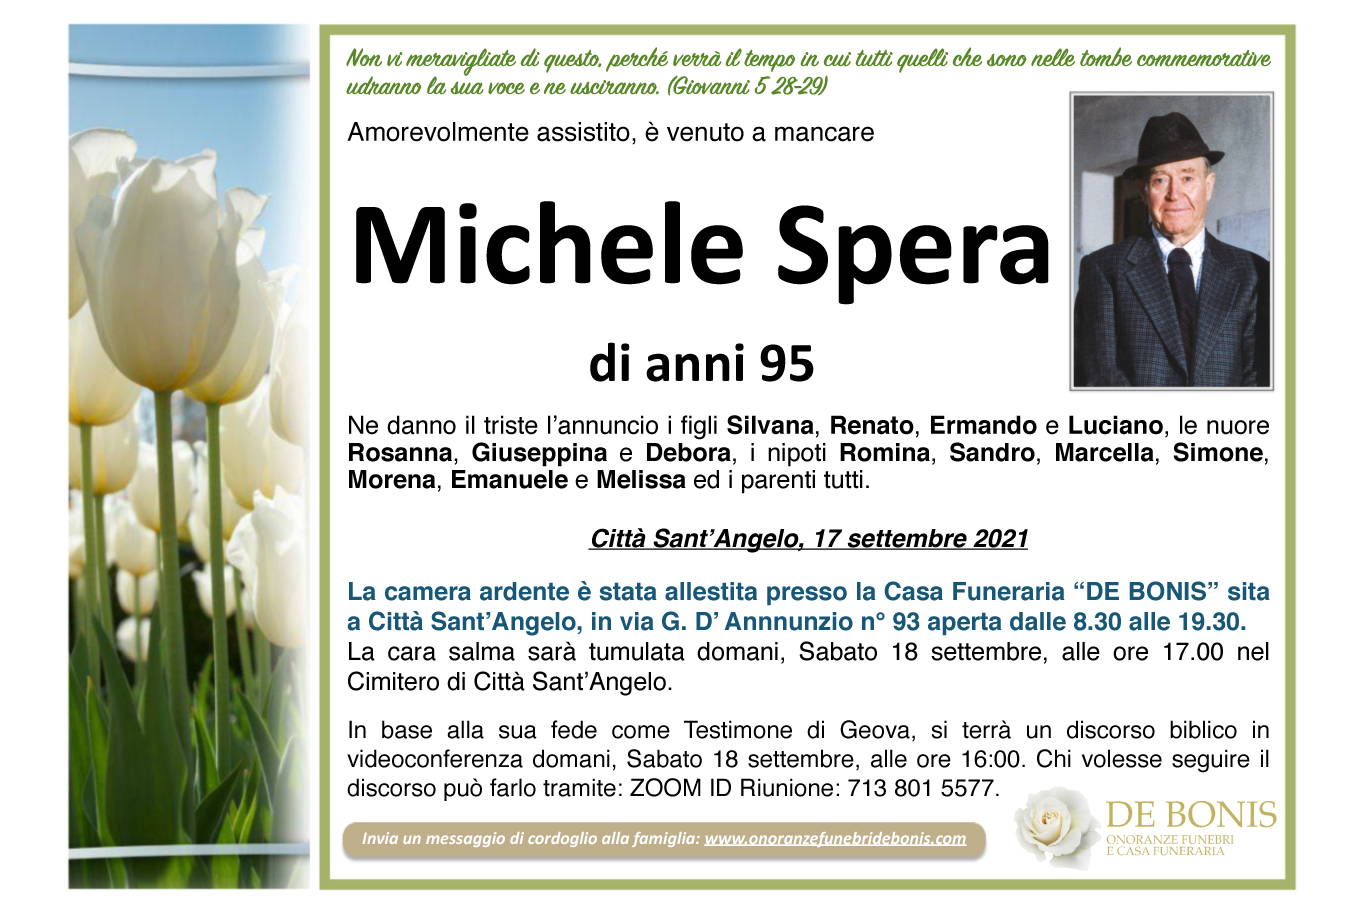 Michele Spera